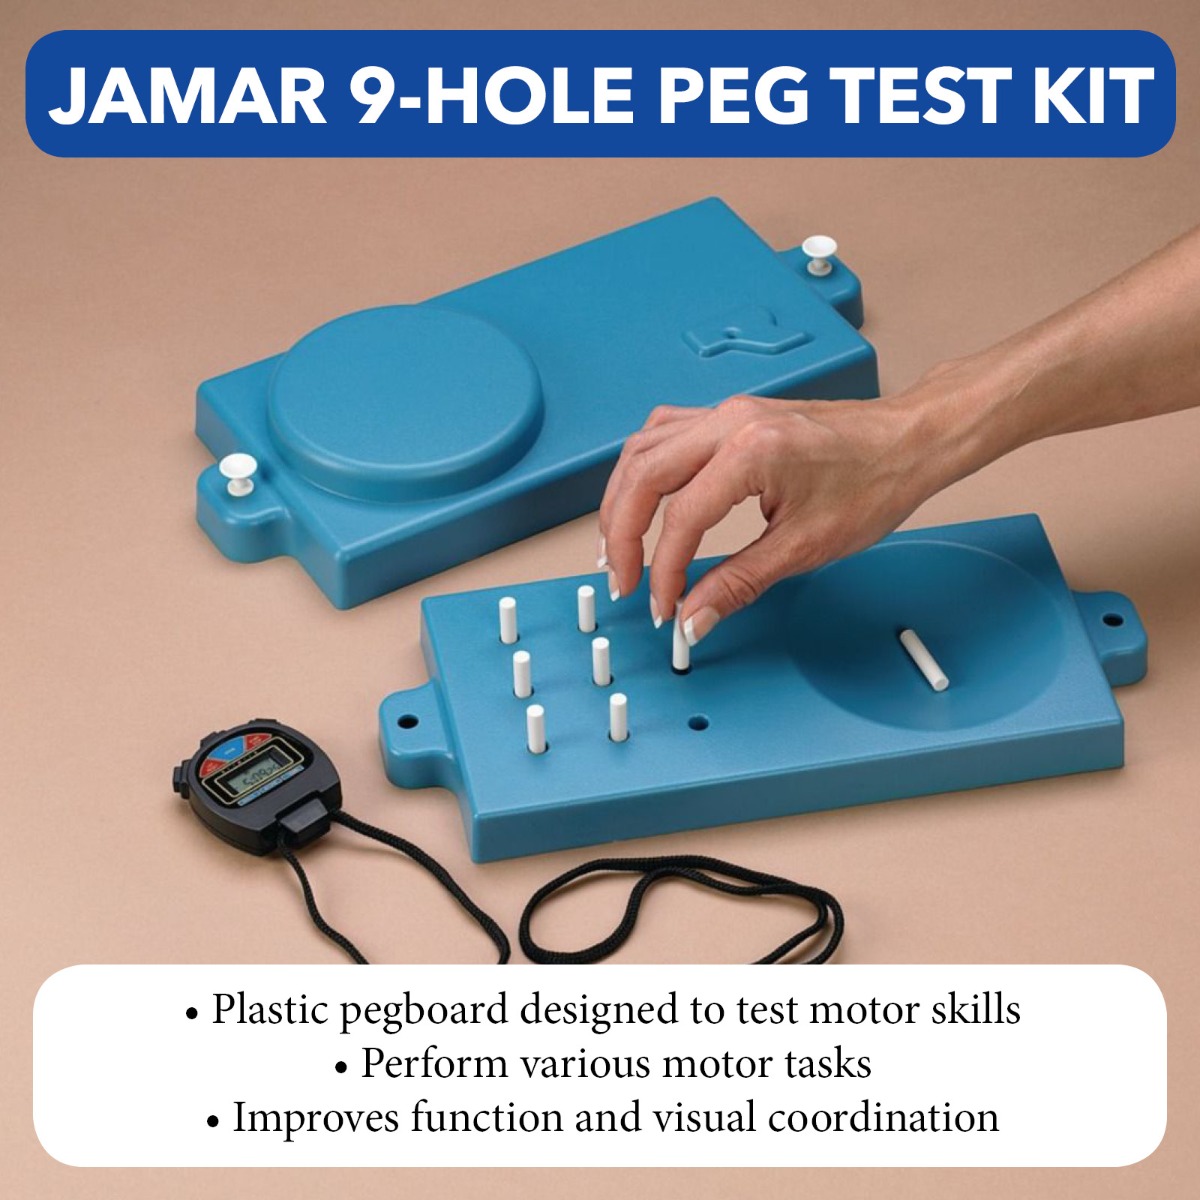 Jamar 9-Hole Peg Test Kit Product Image